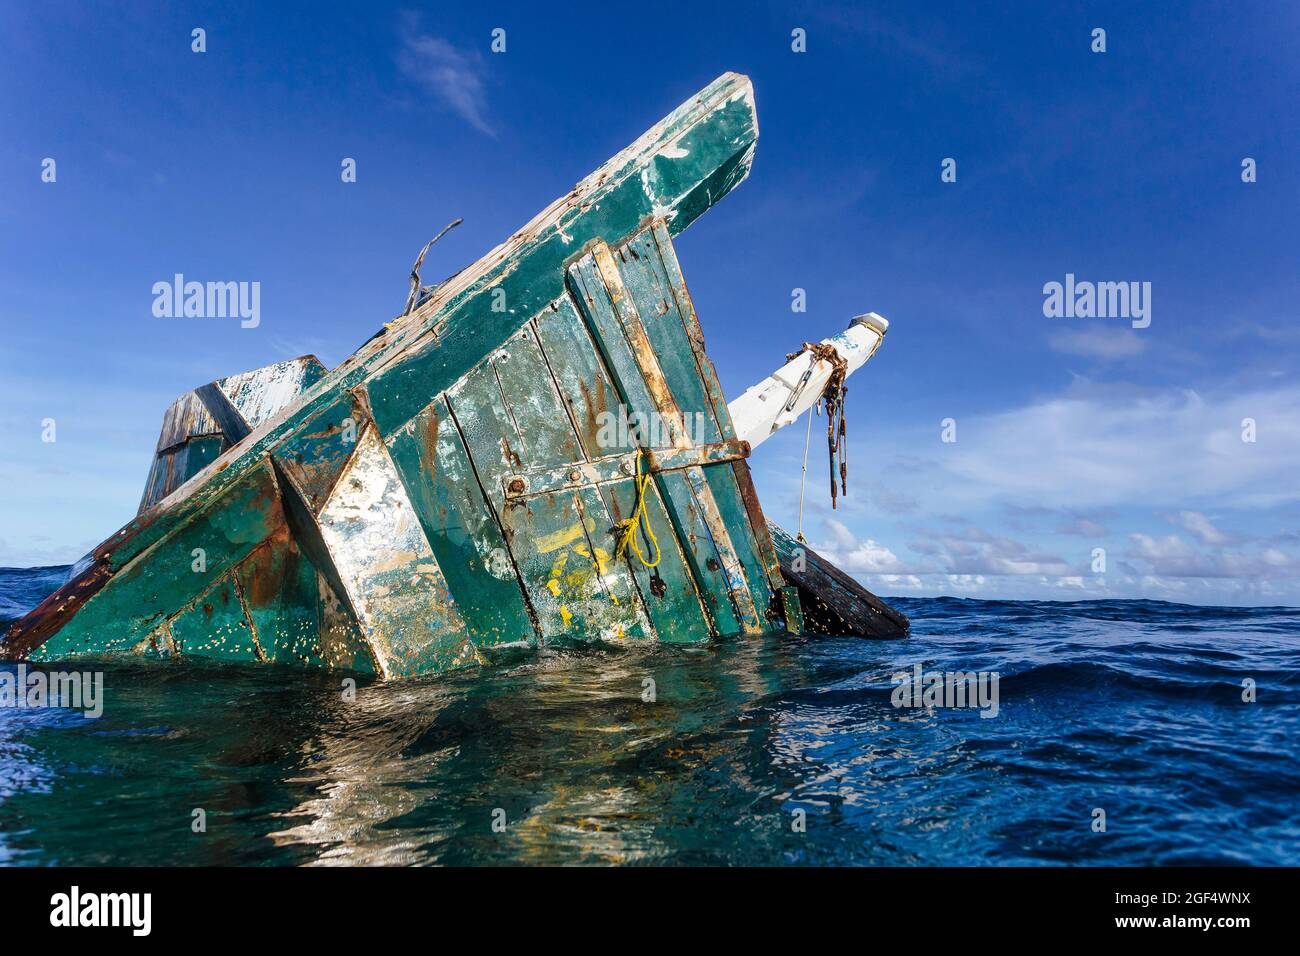 Vecchia nave abbandonata che galleggia sull'acqua in mare Foto Stock